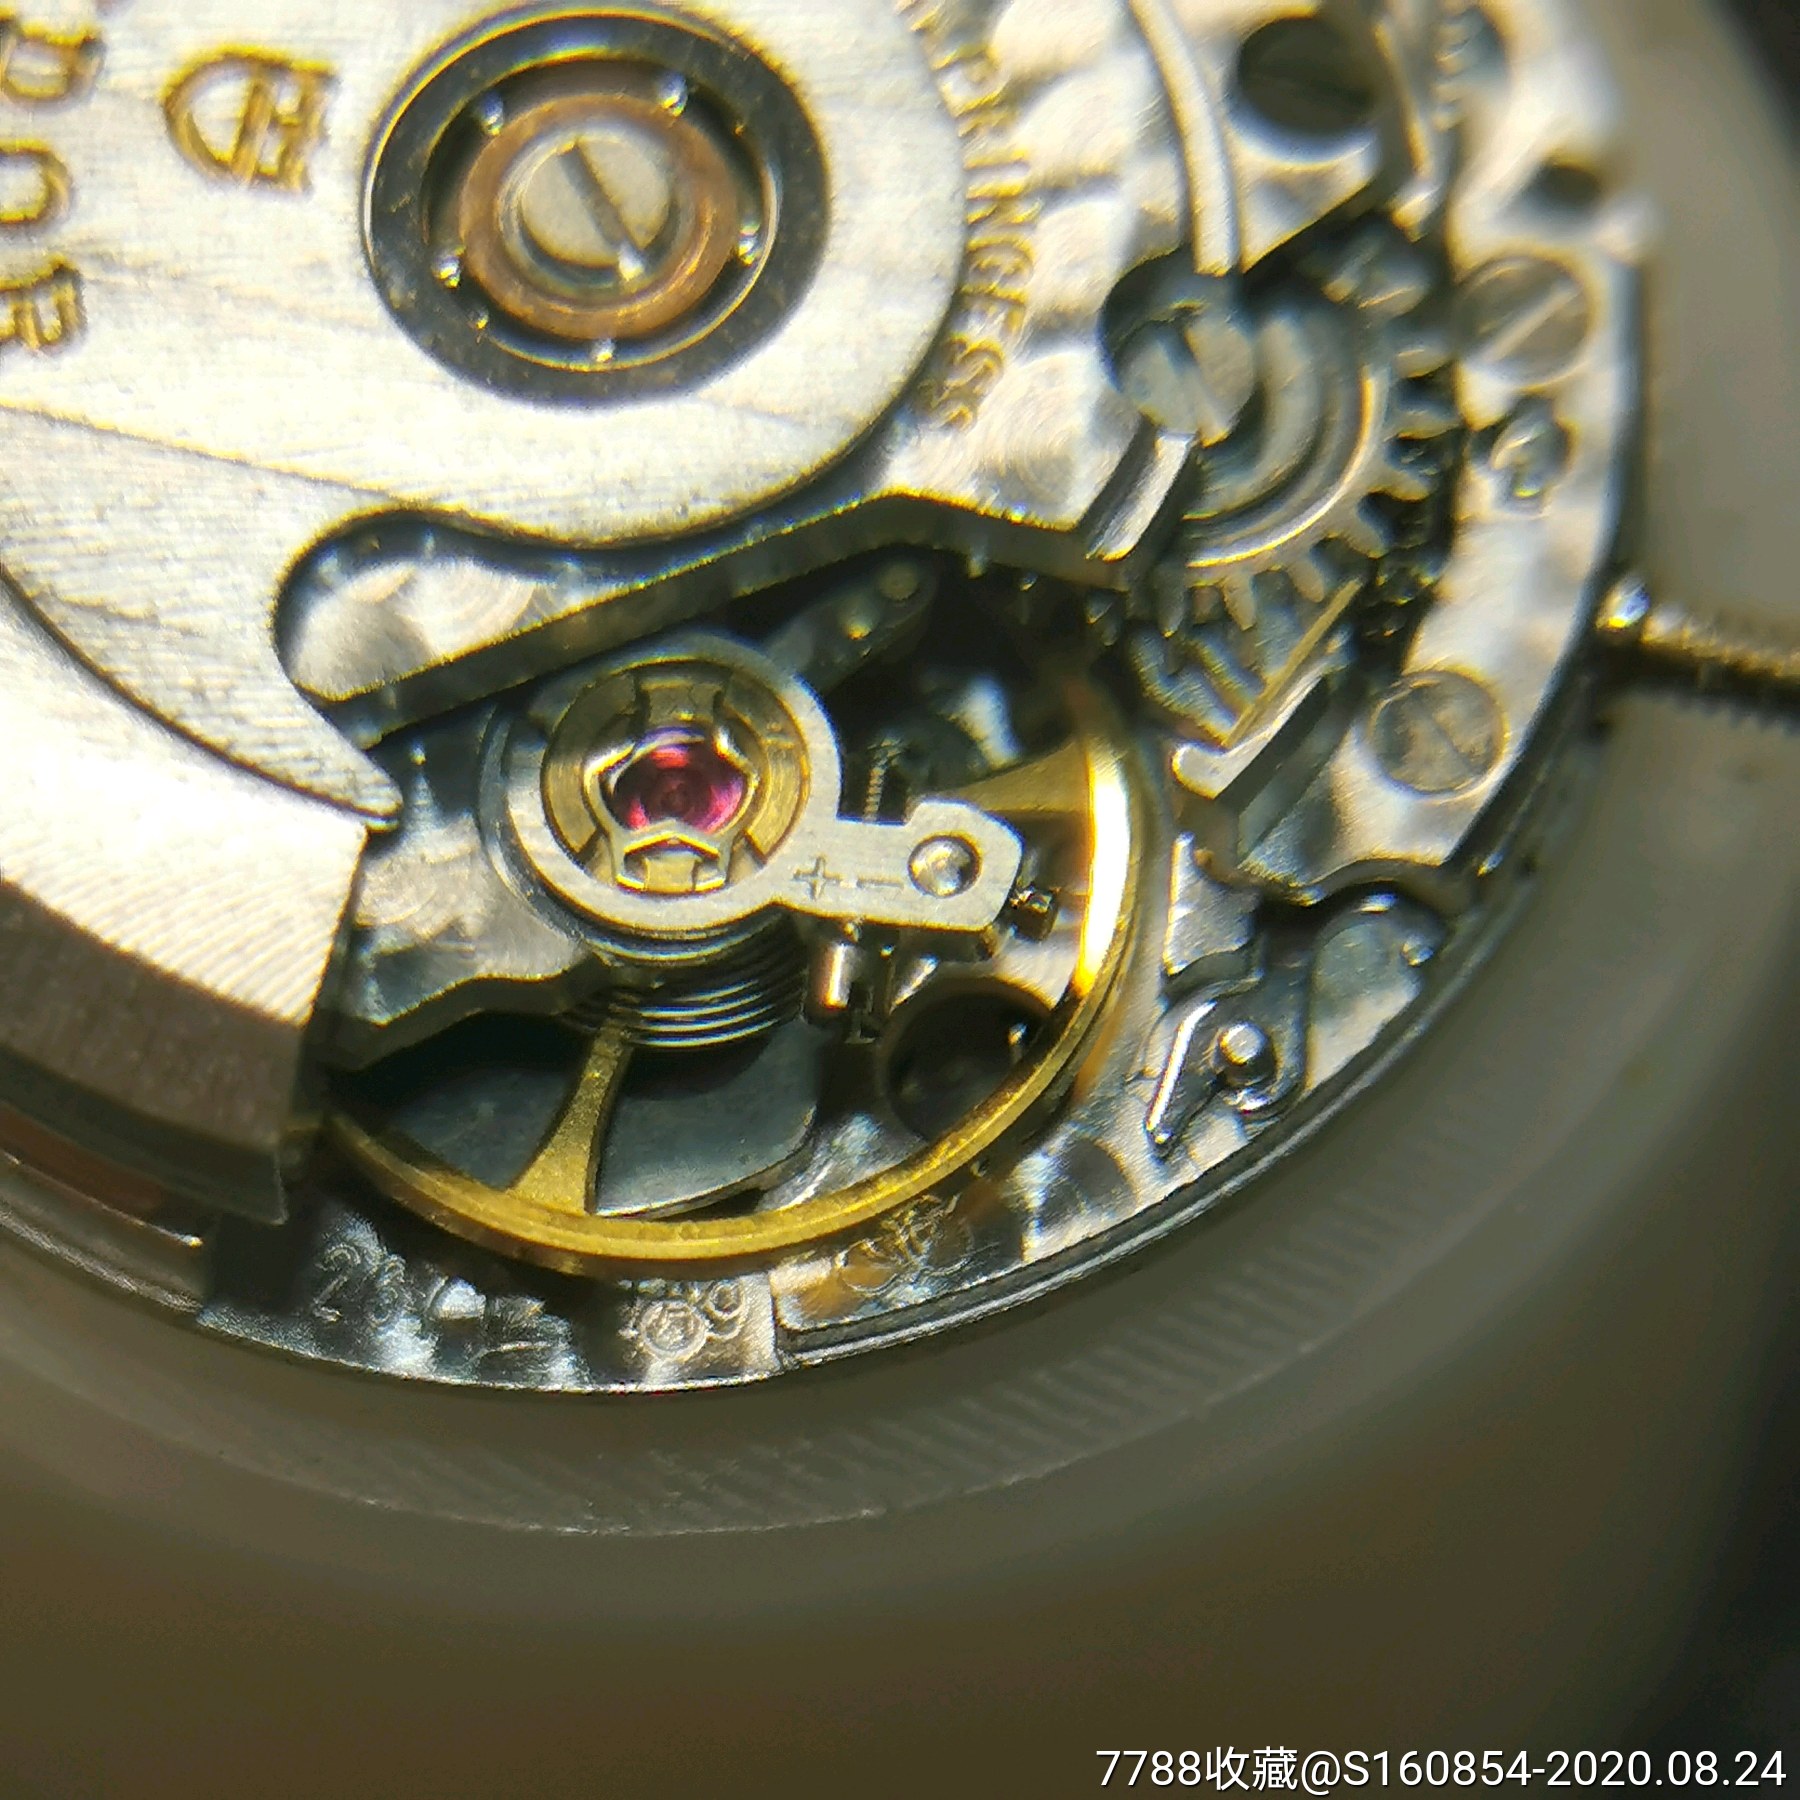 二手瑞士帝舵自动机械手表拆机eta2671机芯